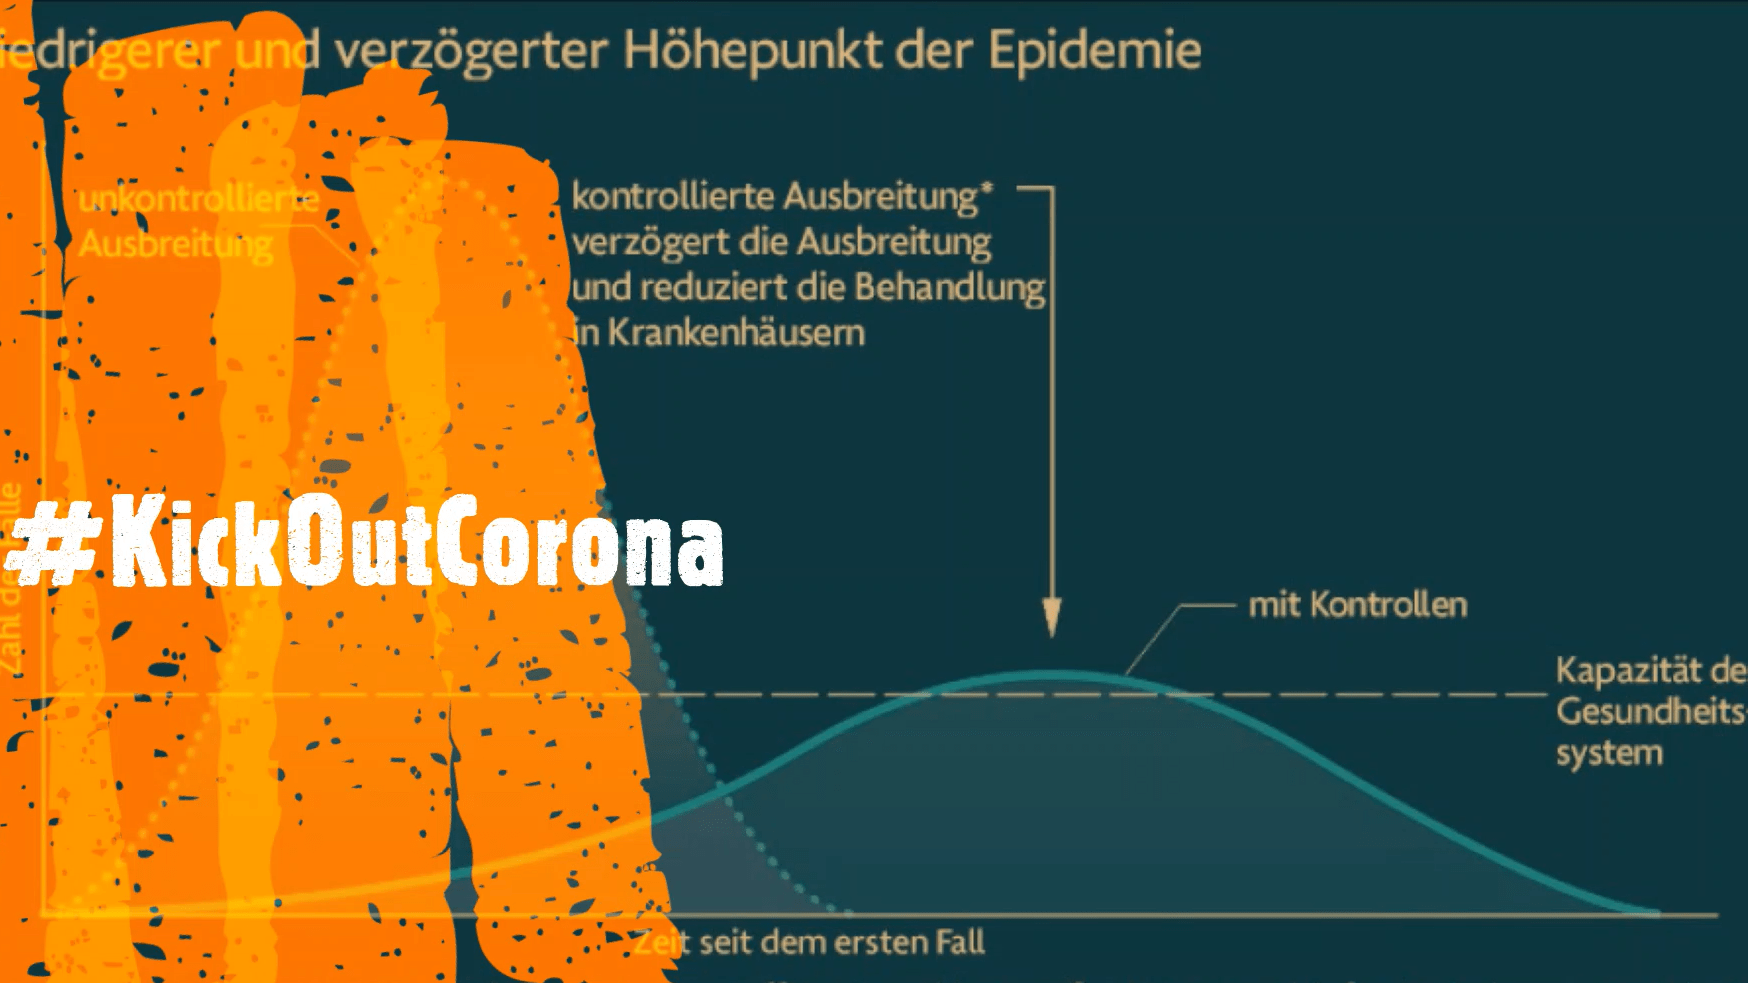 Der Hashtag #KickOutCorona vor einer Übersicht zu Corona - Warum eine kontrollierte Ausbreitung sinnvoll ist.